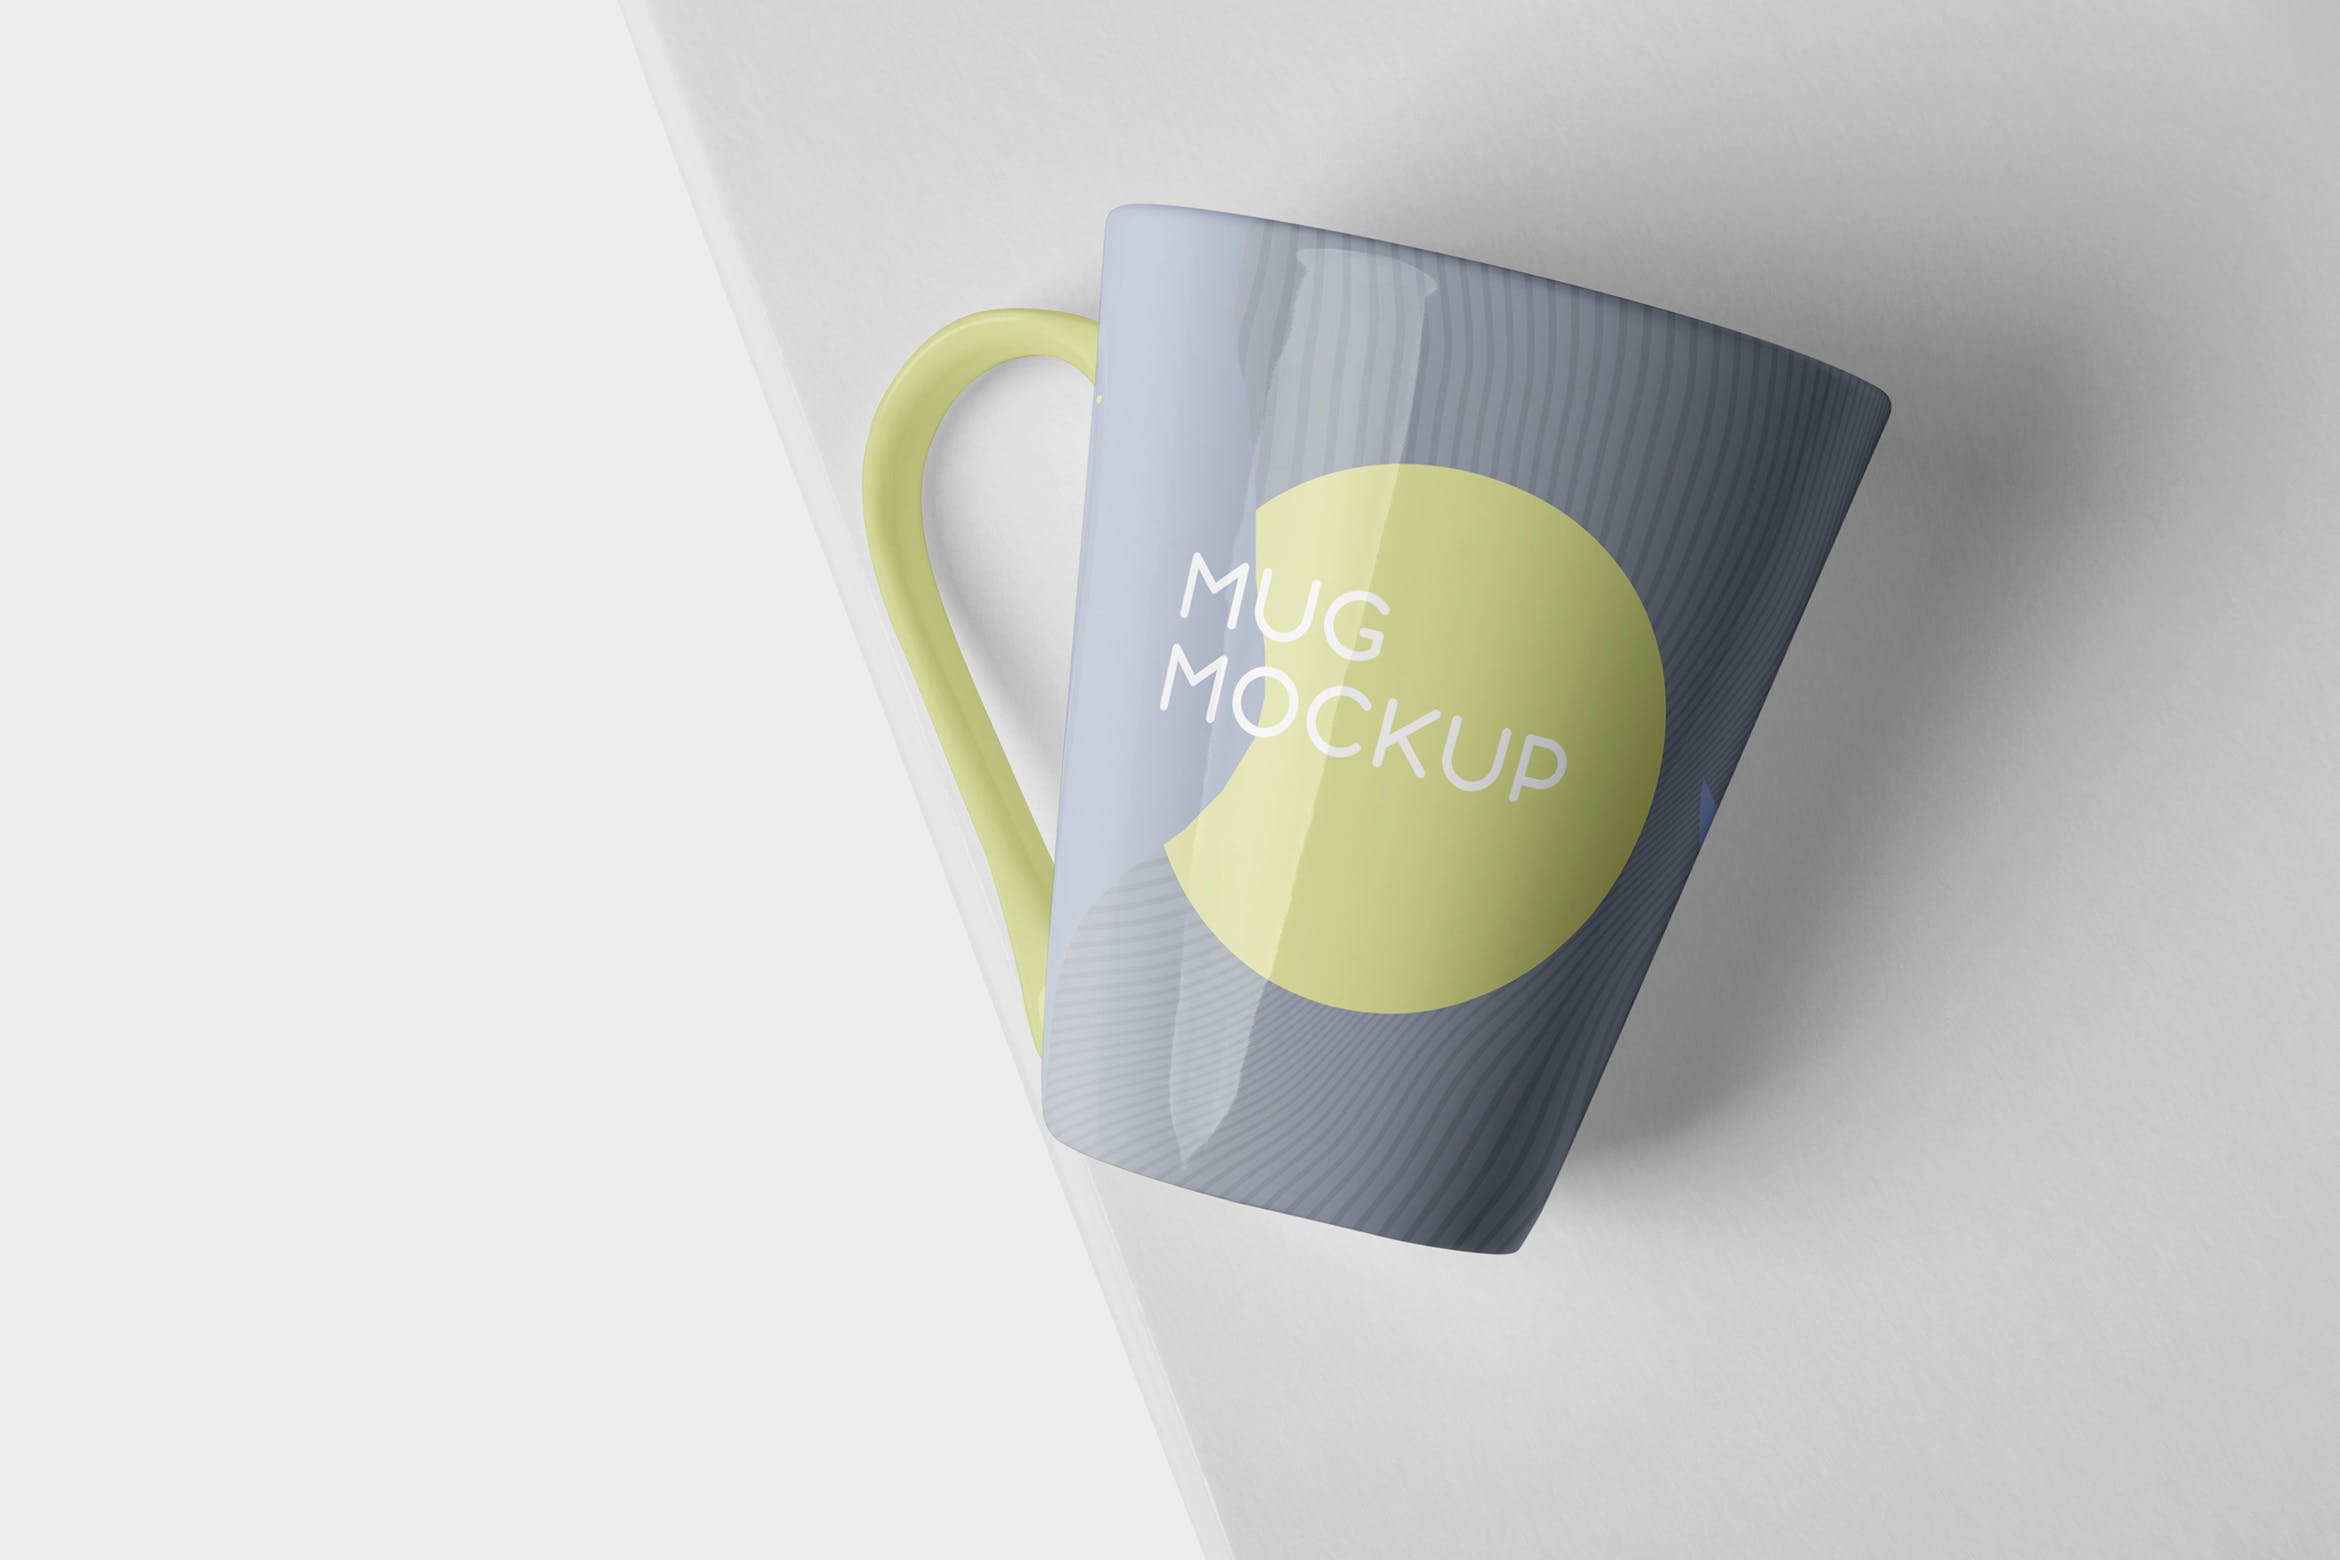 锥形马克杯图案设计蚂蚁素材精选 Mug Mockup – Cone Shaped插图